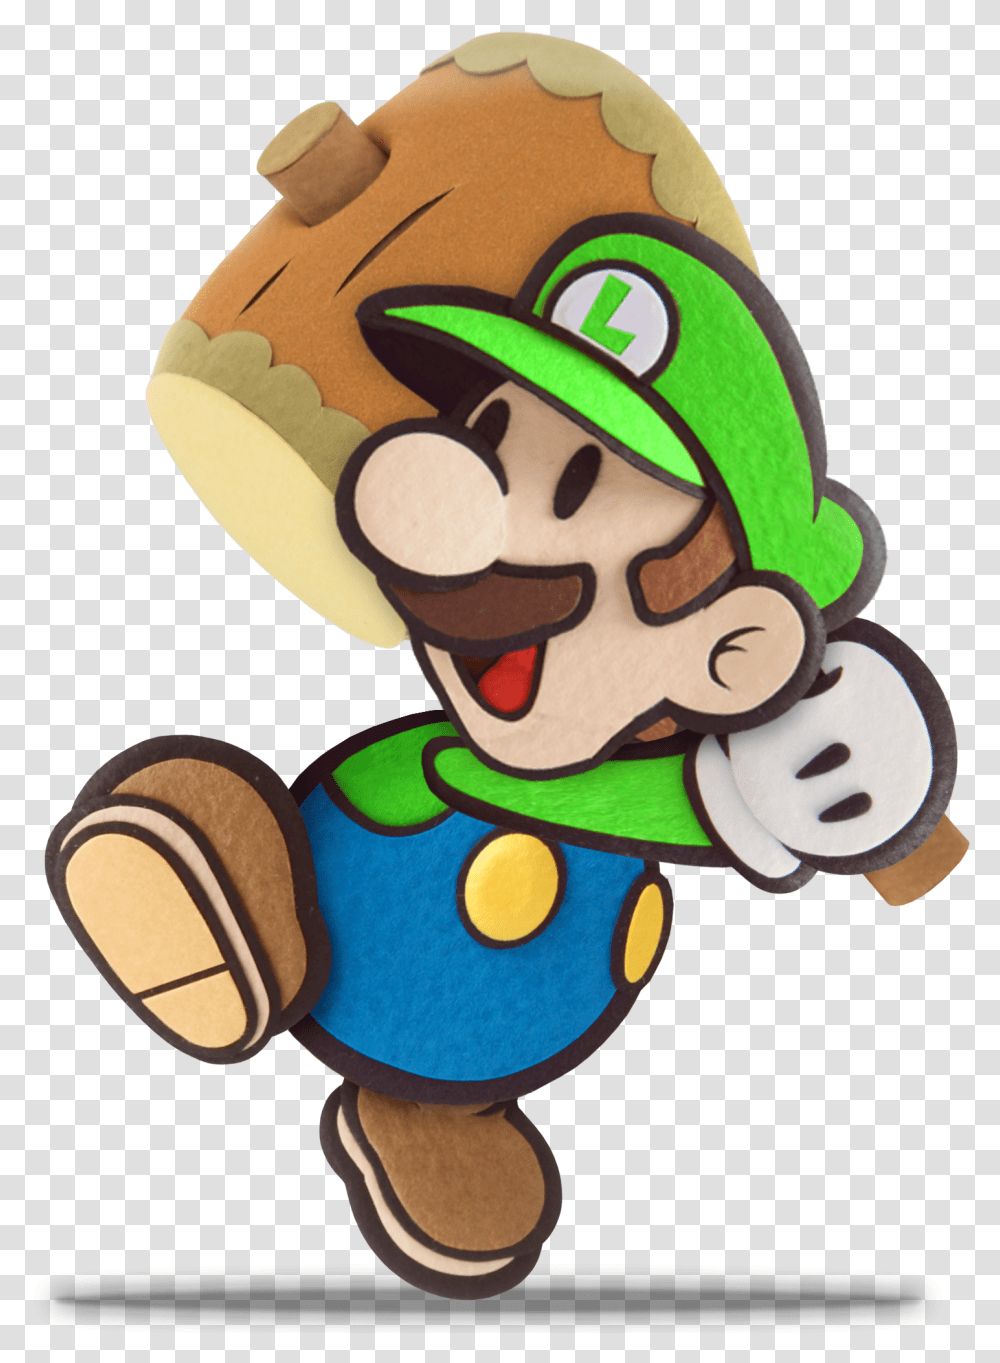 Images Of Paper Luigi Do Luigi Super Paper Mario, Super Mario, Toy Transparent Png